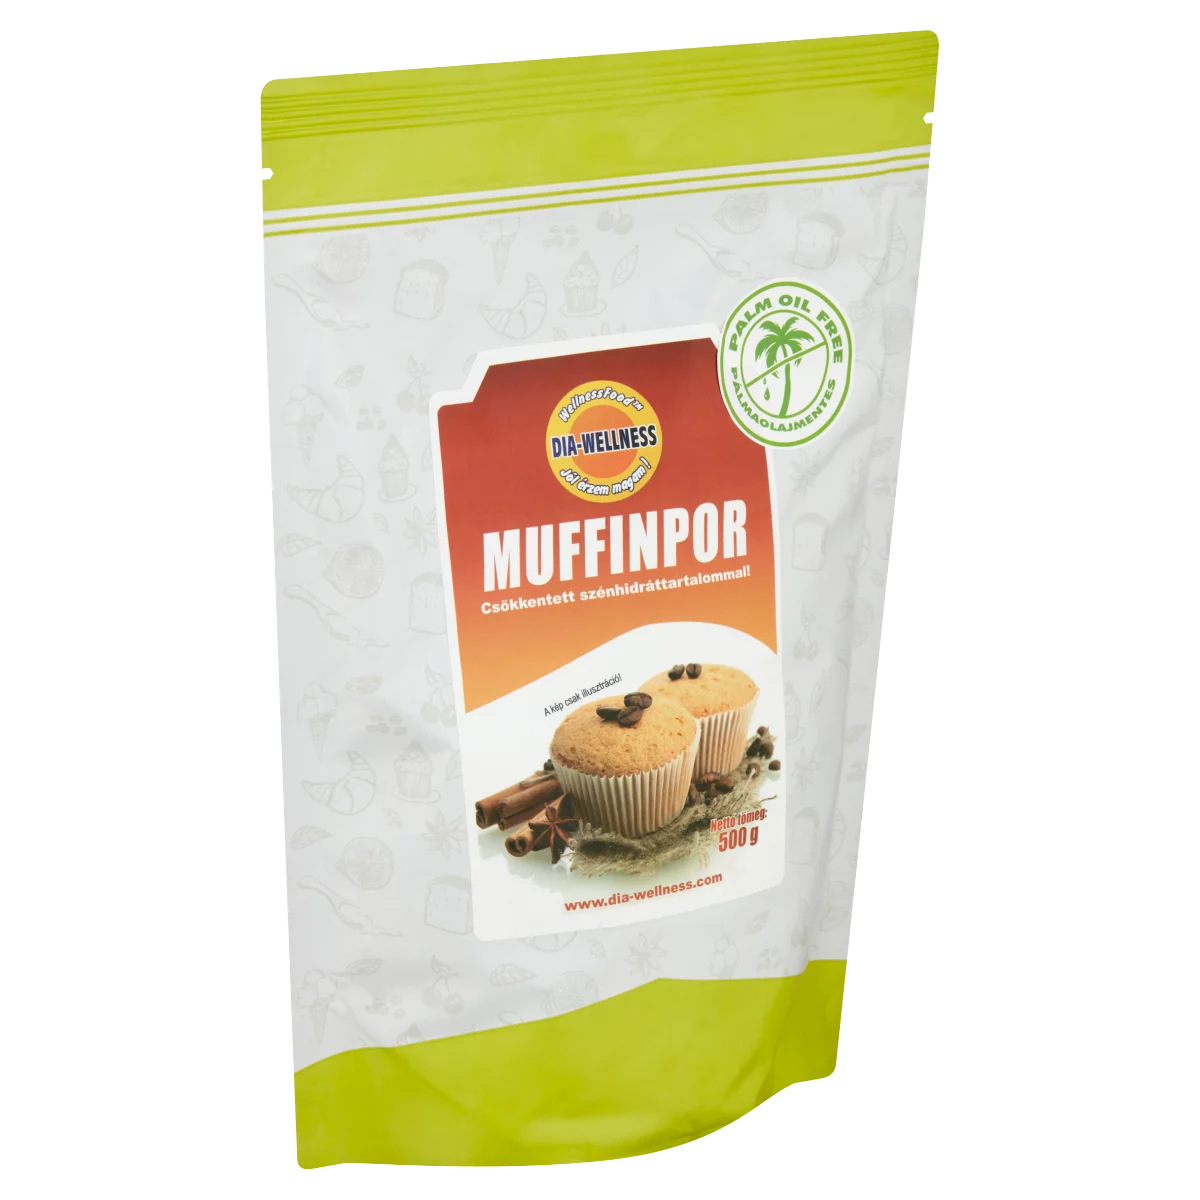 Dia-Wellness muffinpor 500 g